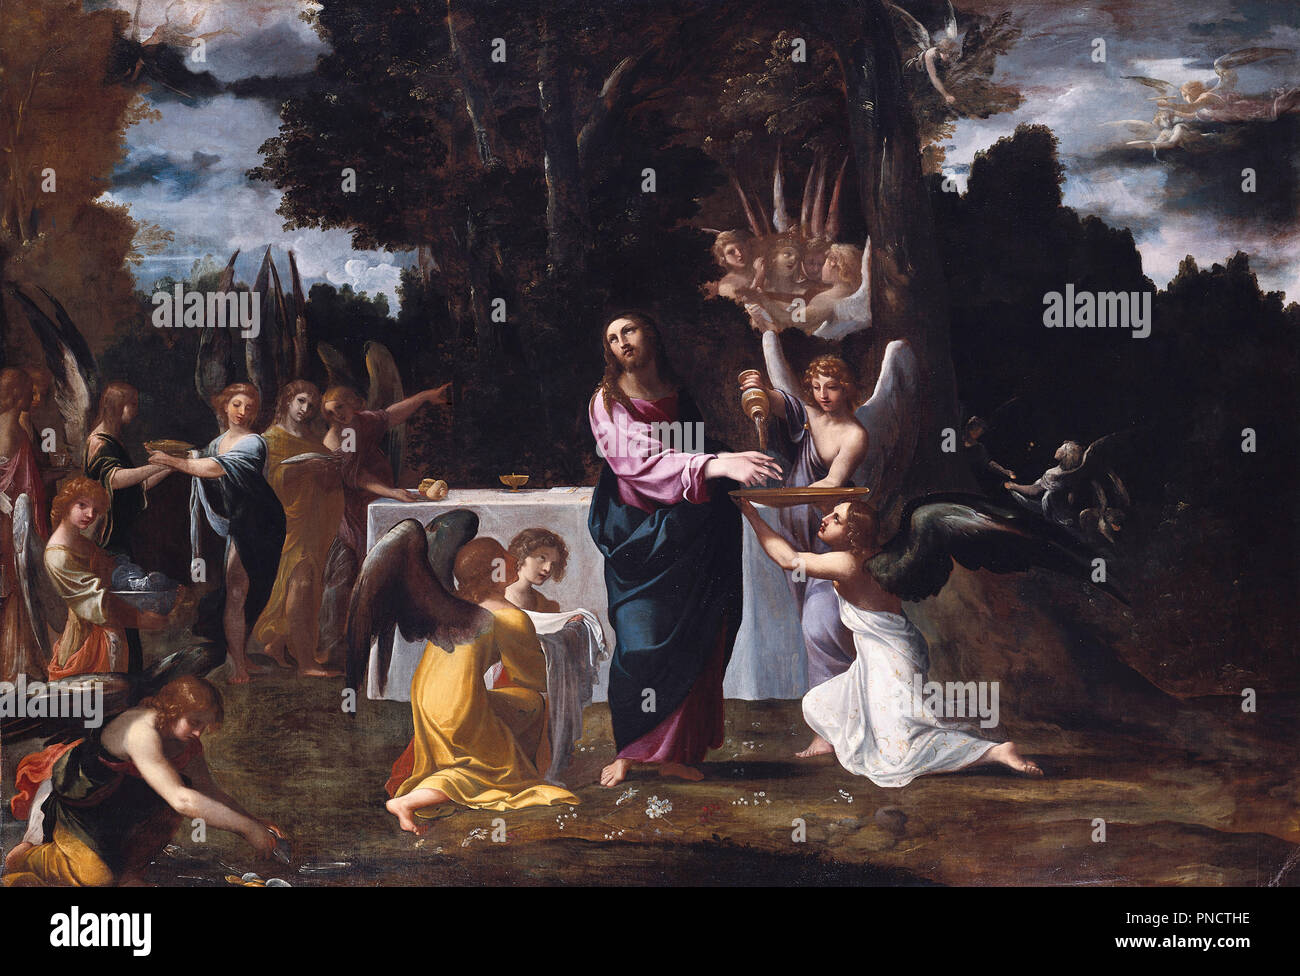 Le Christ dans le désert, servi par des anges. Date/Période : Ca. 1608. La peinture. Huile sur toile. Hauteur : 157,2 cm (61,8 in) ; Largeur : 225,3 cm (88,7 in). Auteur : Ludovico Carracci. Banque D'Images